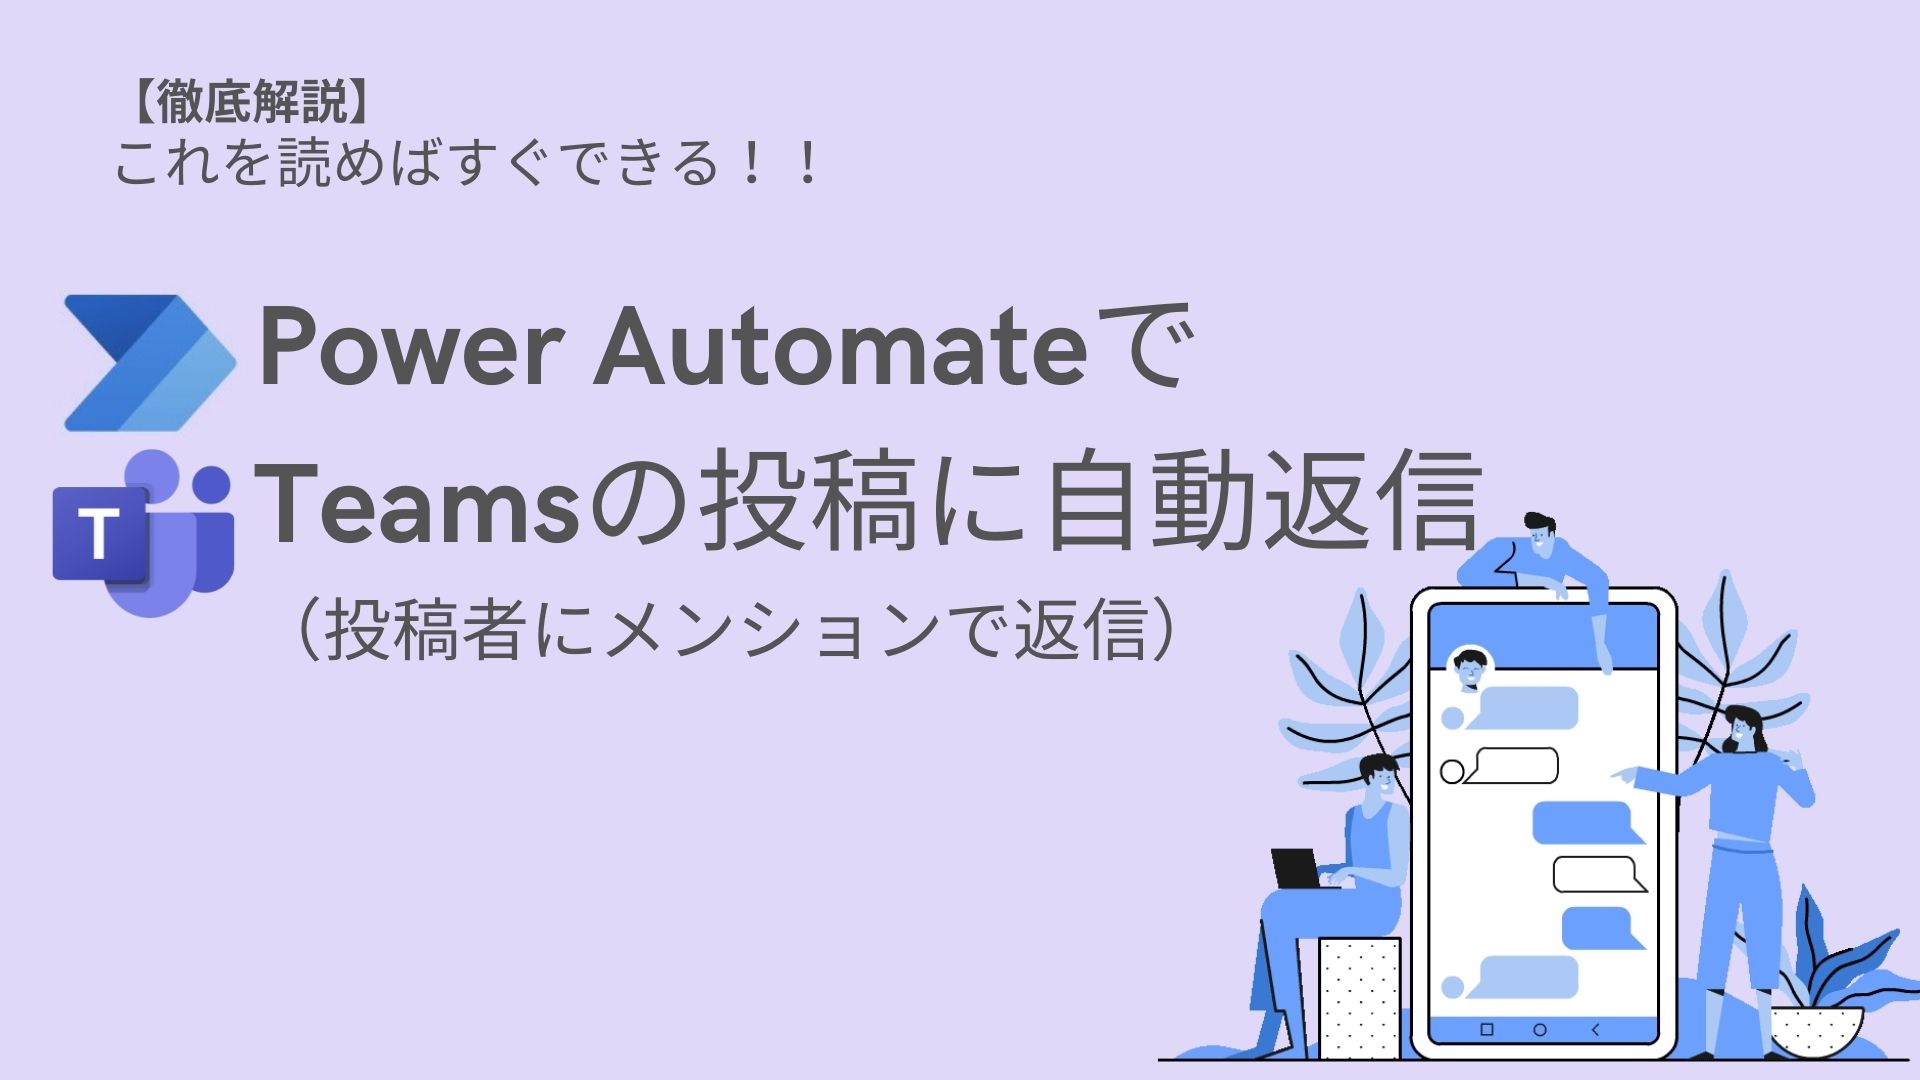 【自動化】PowerAutomateでTeamsのメッセージを取得して自動返信する方法